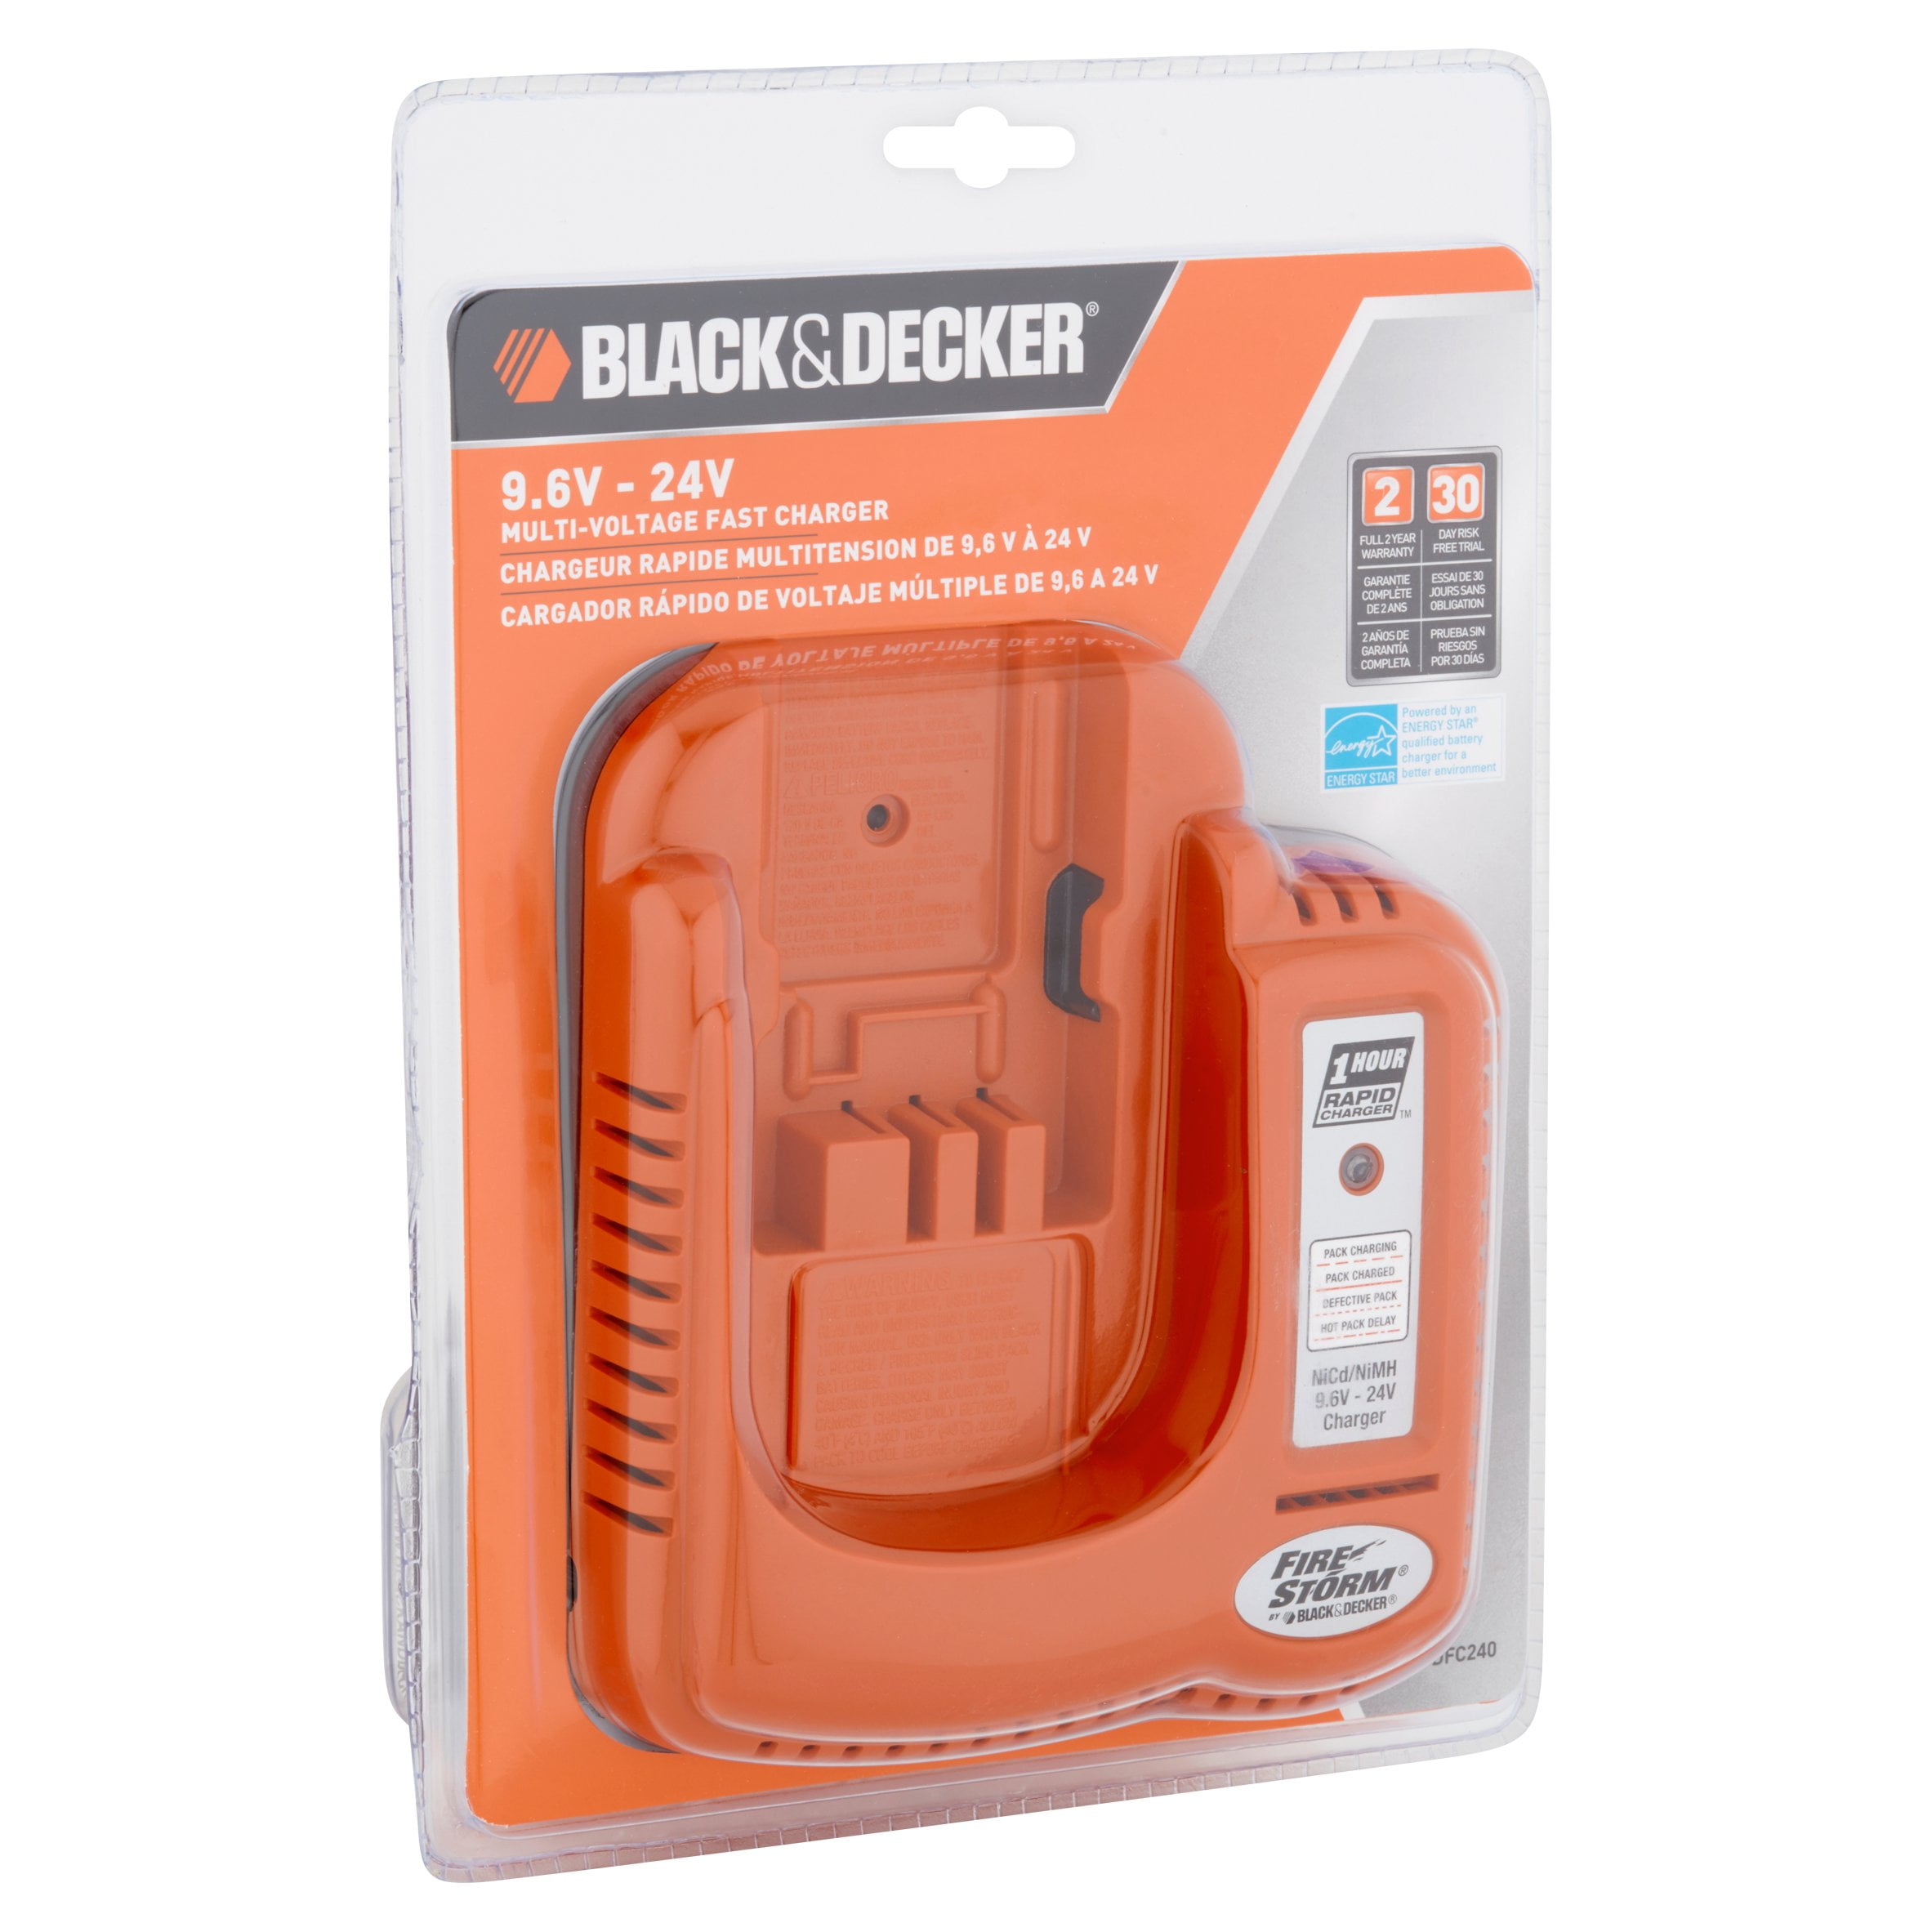 BLACK+DECKER 9.6V-24V Multi Battery Charger 